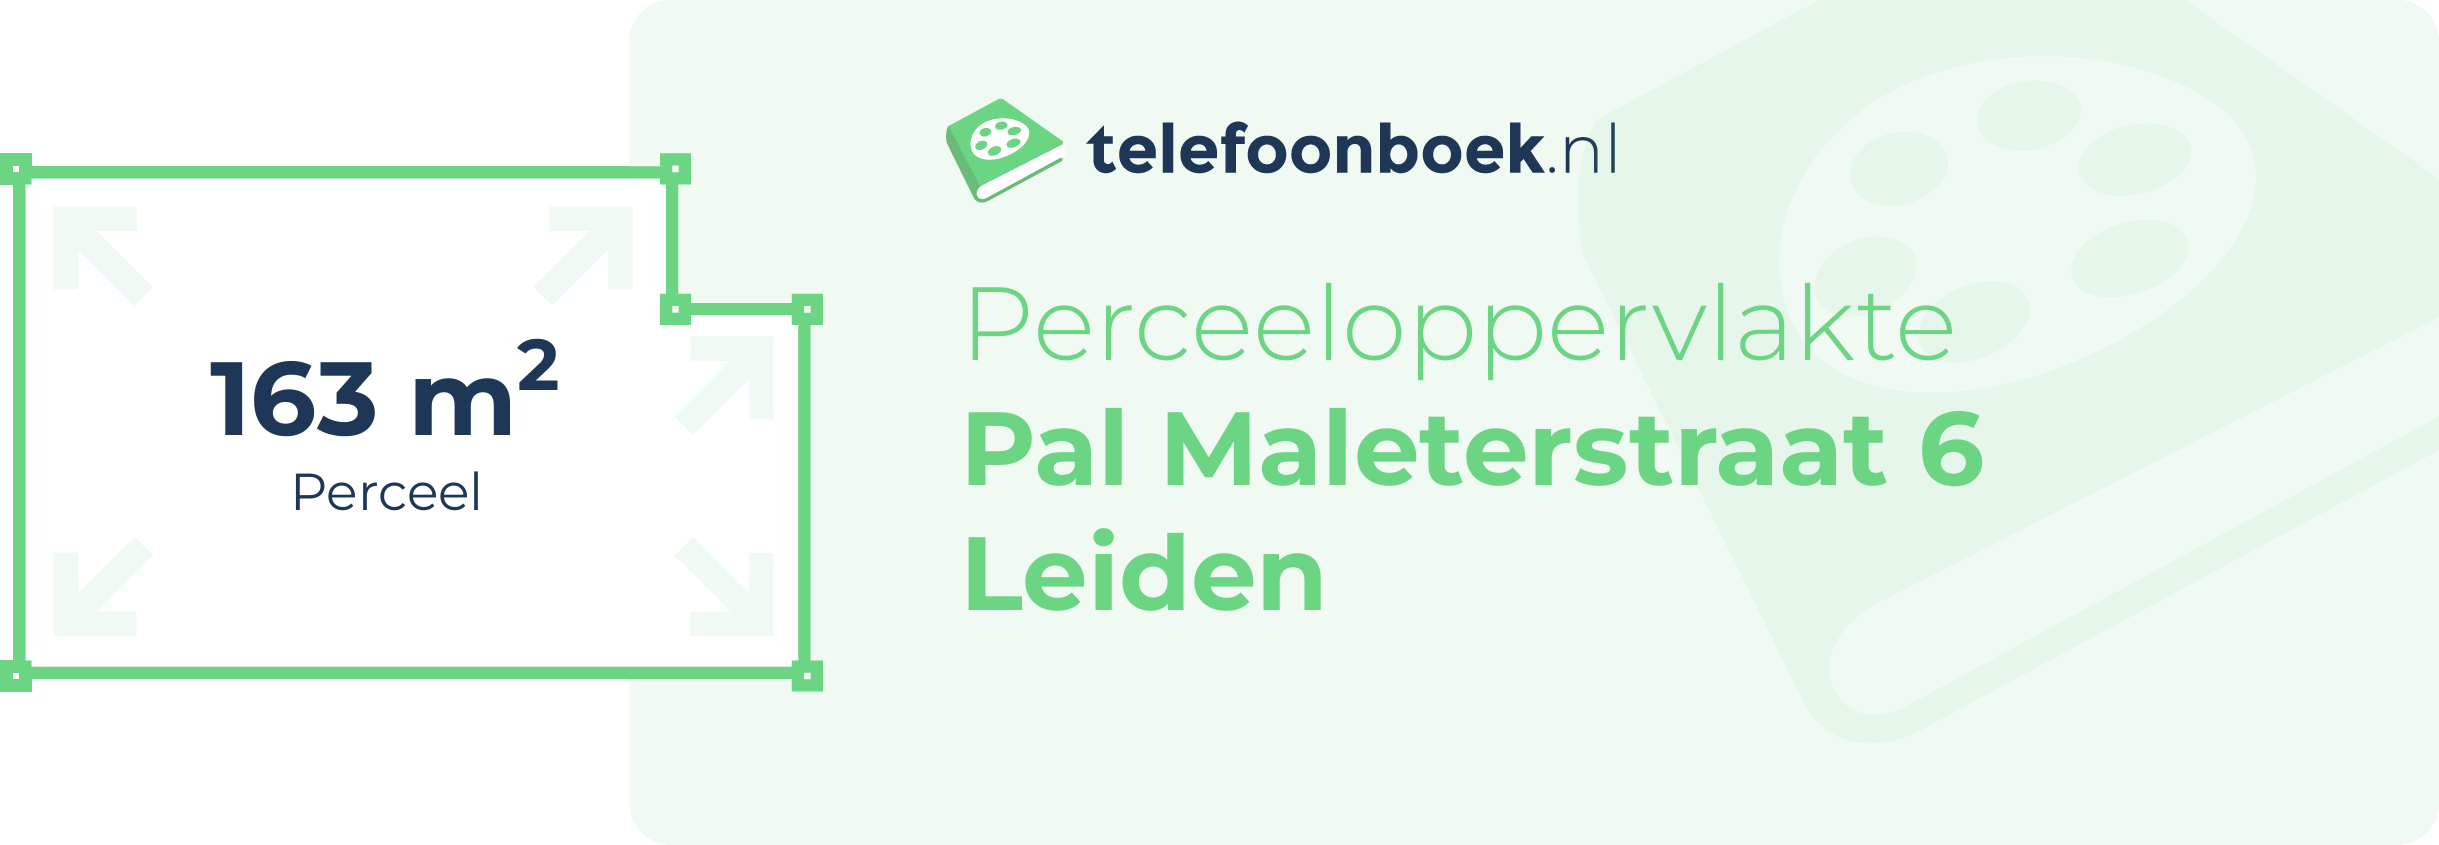 Perceeloppervlakte Pal Maleterstraat 6 Leiden